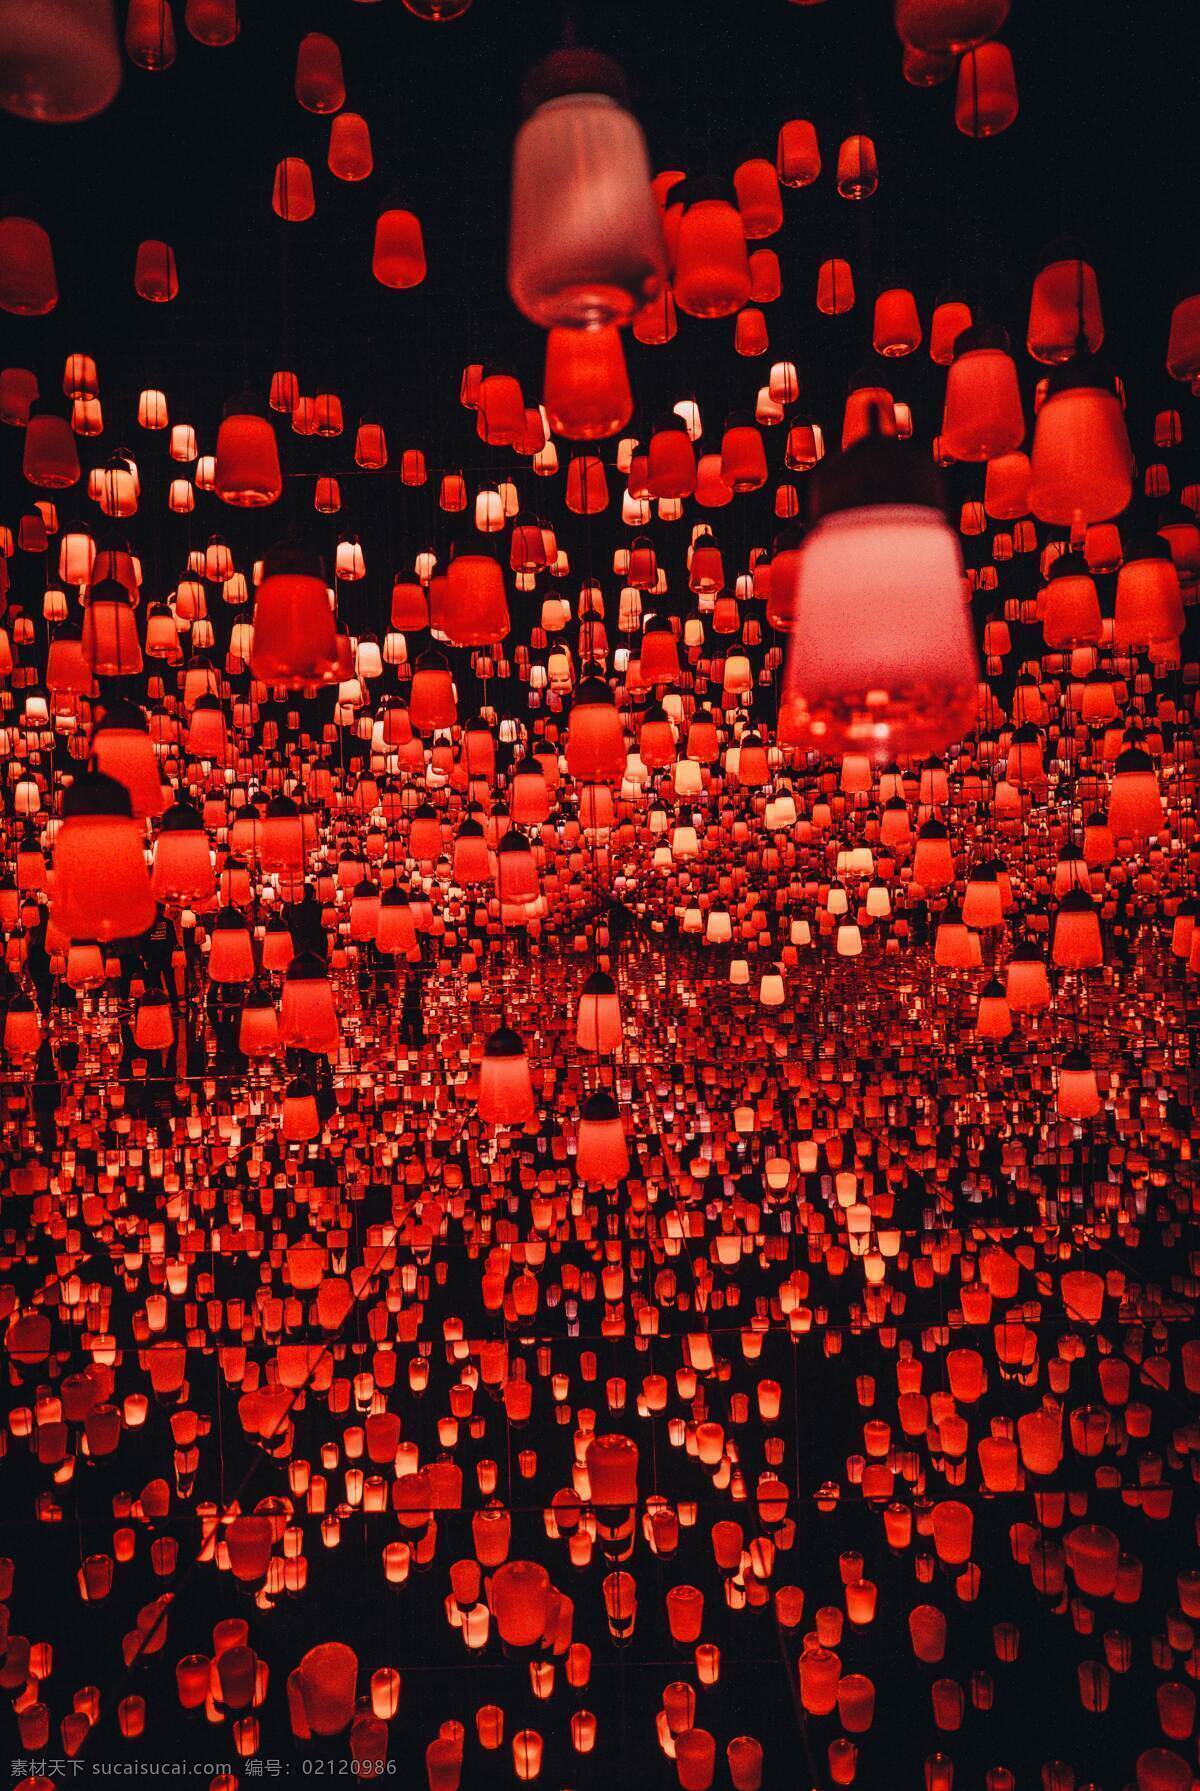 红灯笼 灯笼 喜庆 传统文化 节日 庆祝 红色 春节 端午节 孔明灯 文化艺术 节日庆祝